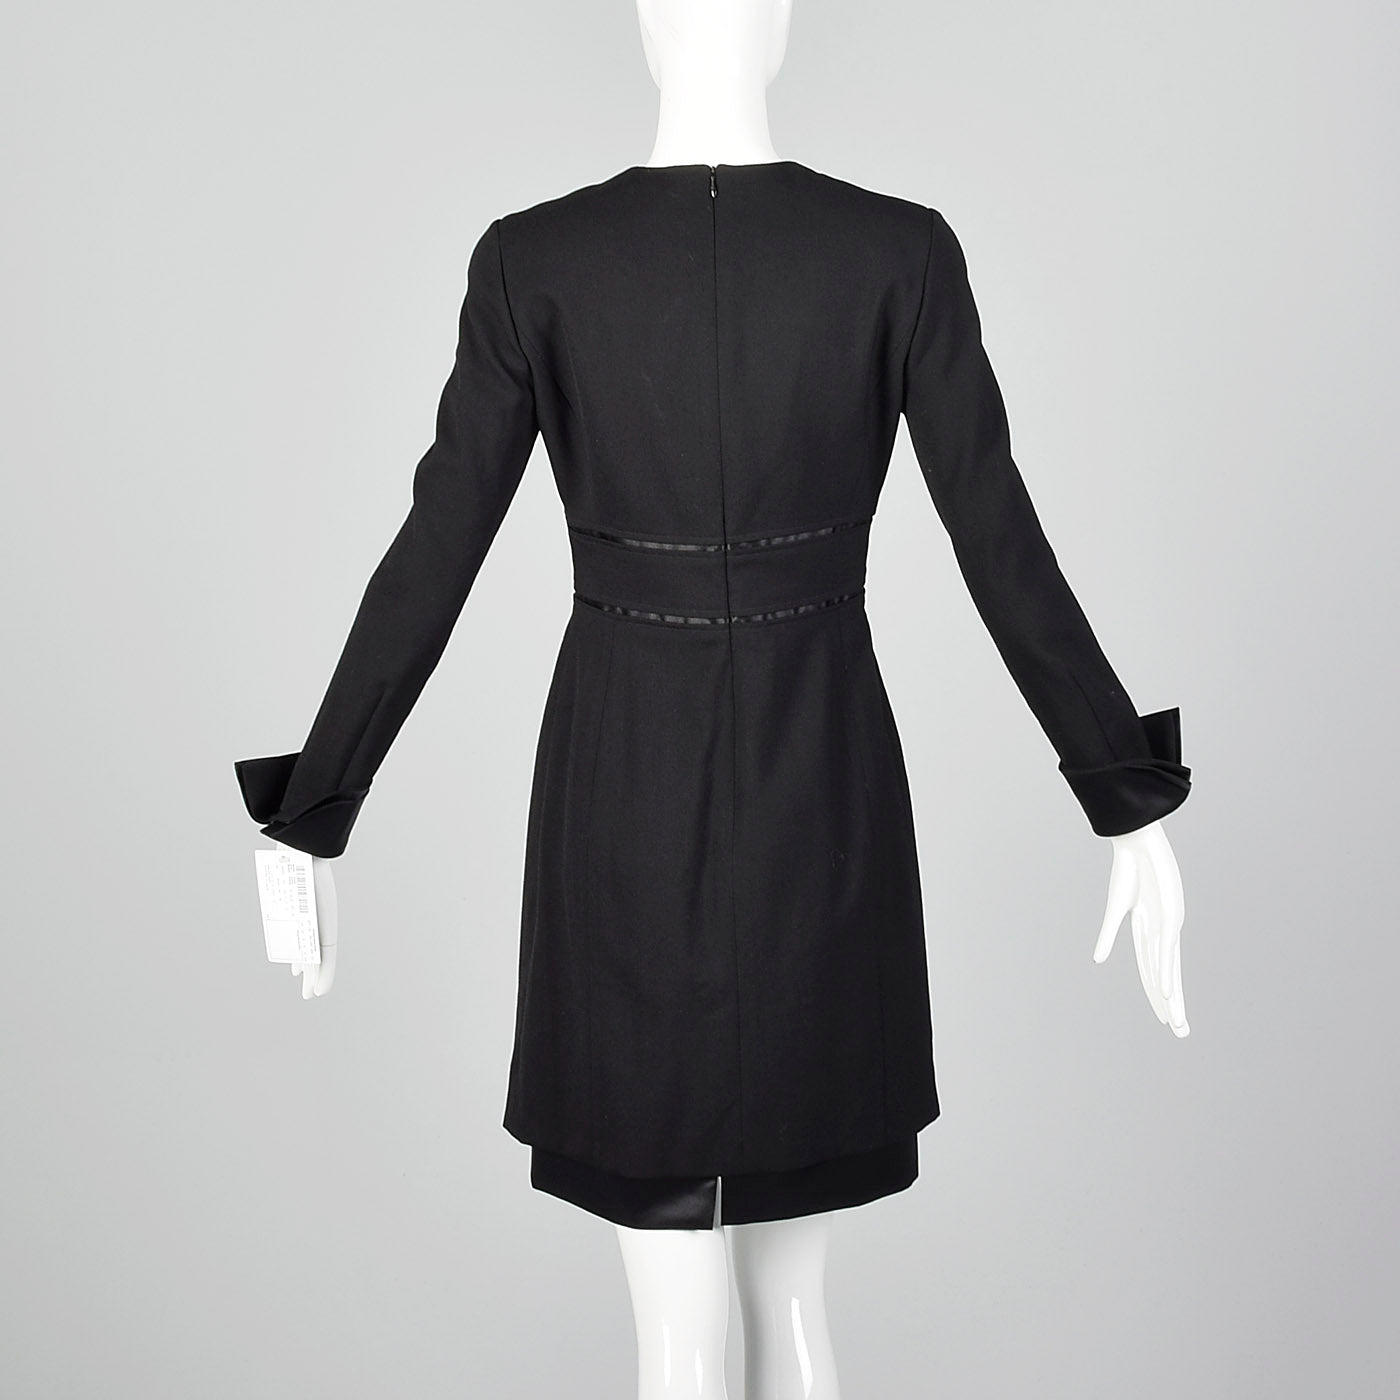 1990s Deadstock Louis Feraud Black Dress